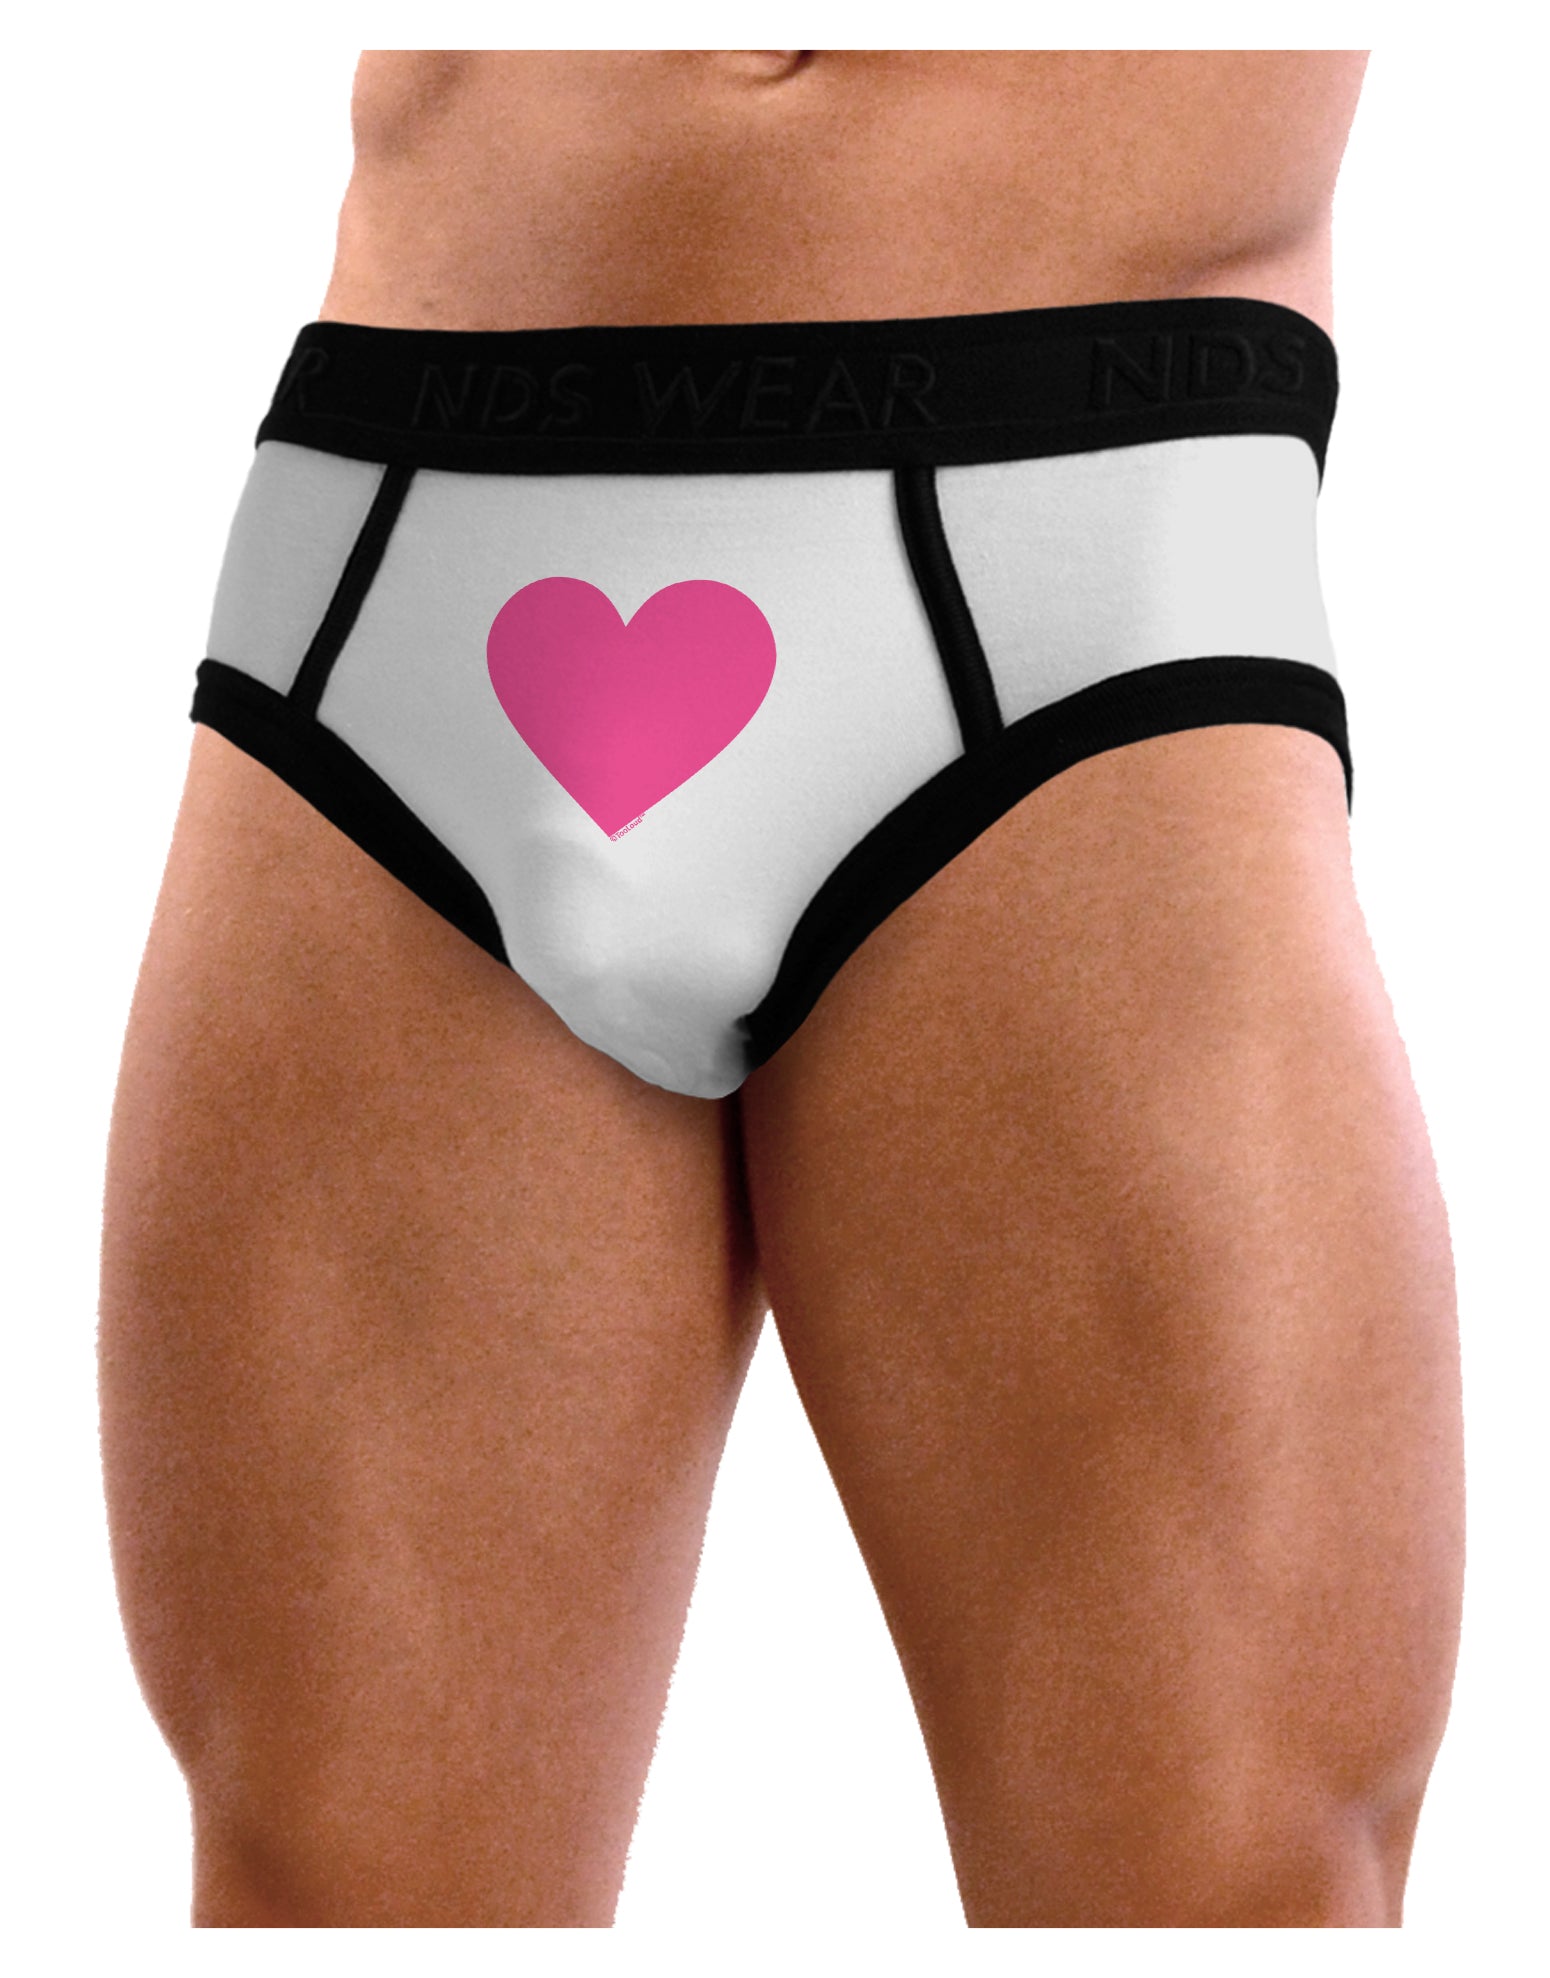 Big Pink Heart Valentine's Day Mens NDS Wear Briefs Underwear - Davson Sales